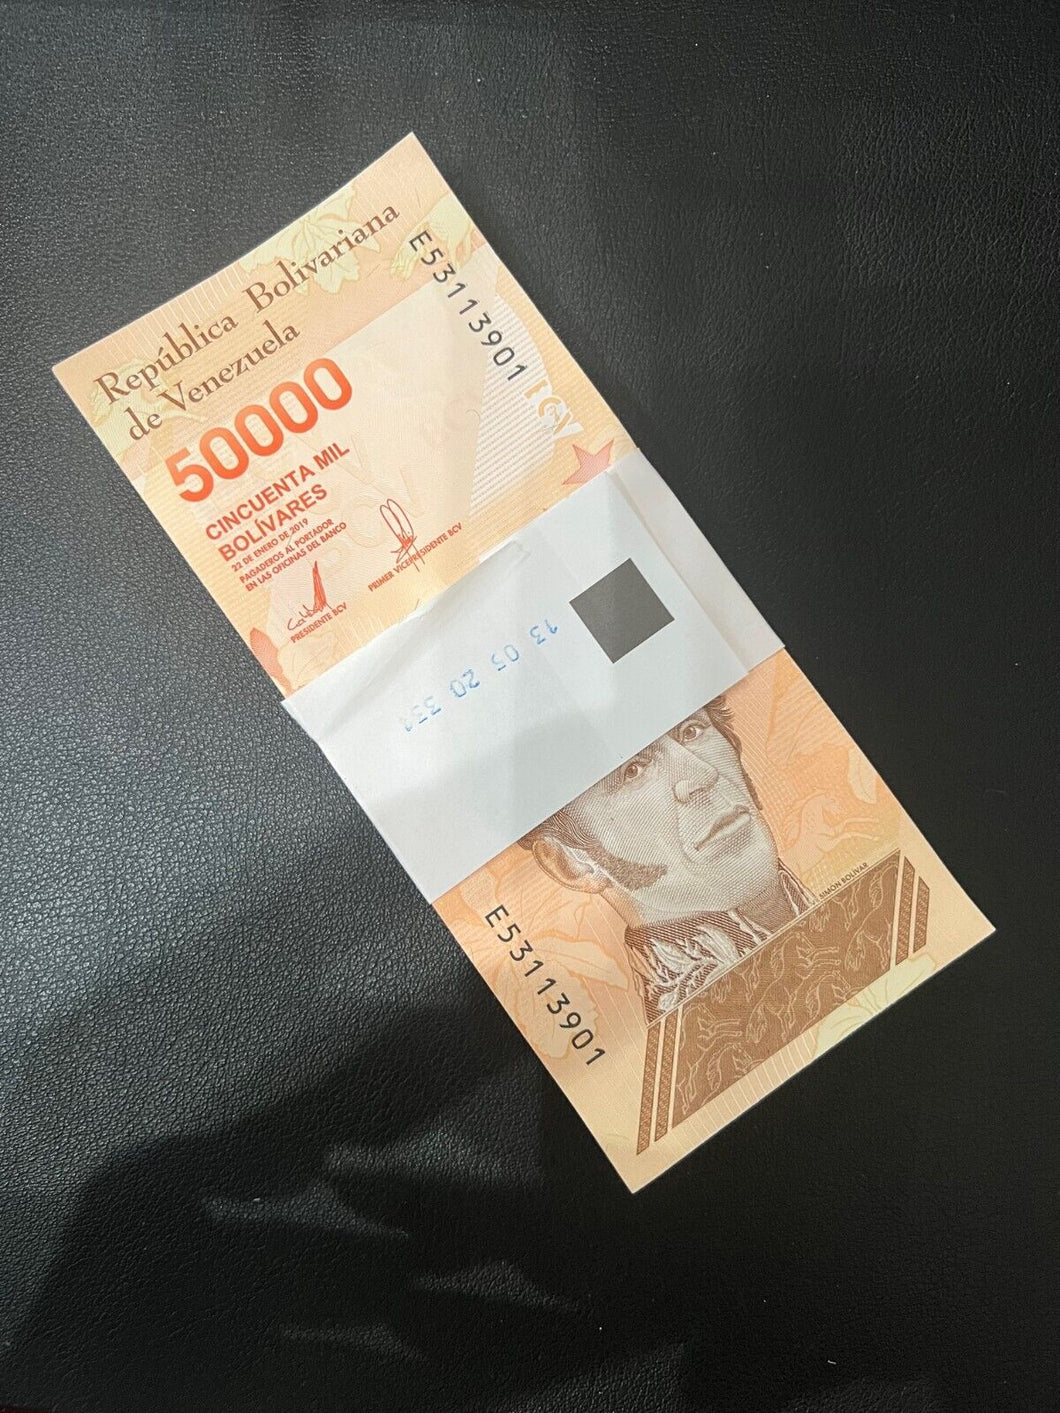 Venezuela 50000 (50,000)Bolivares Banknotes Gem UNCIRCULATED Pack of 100